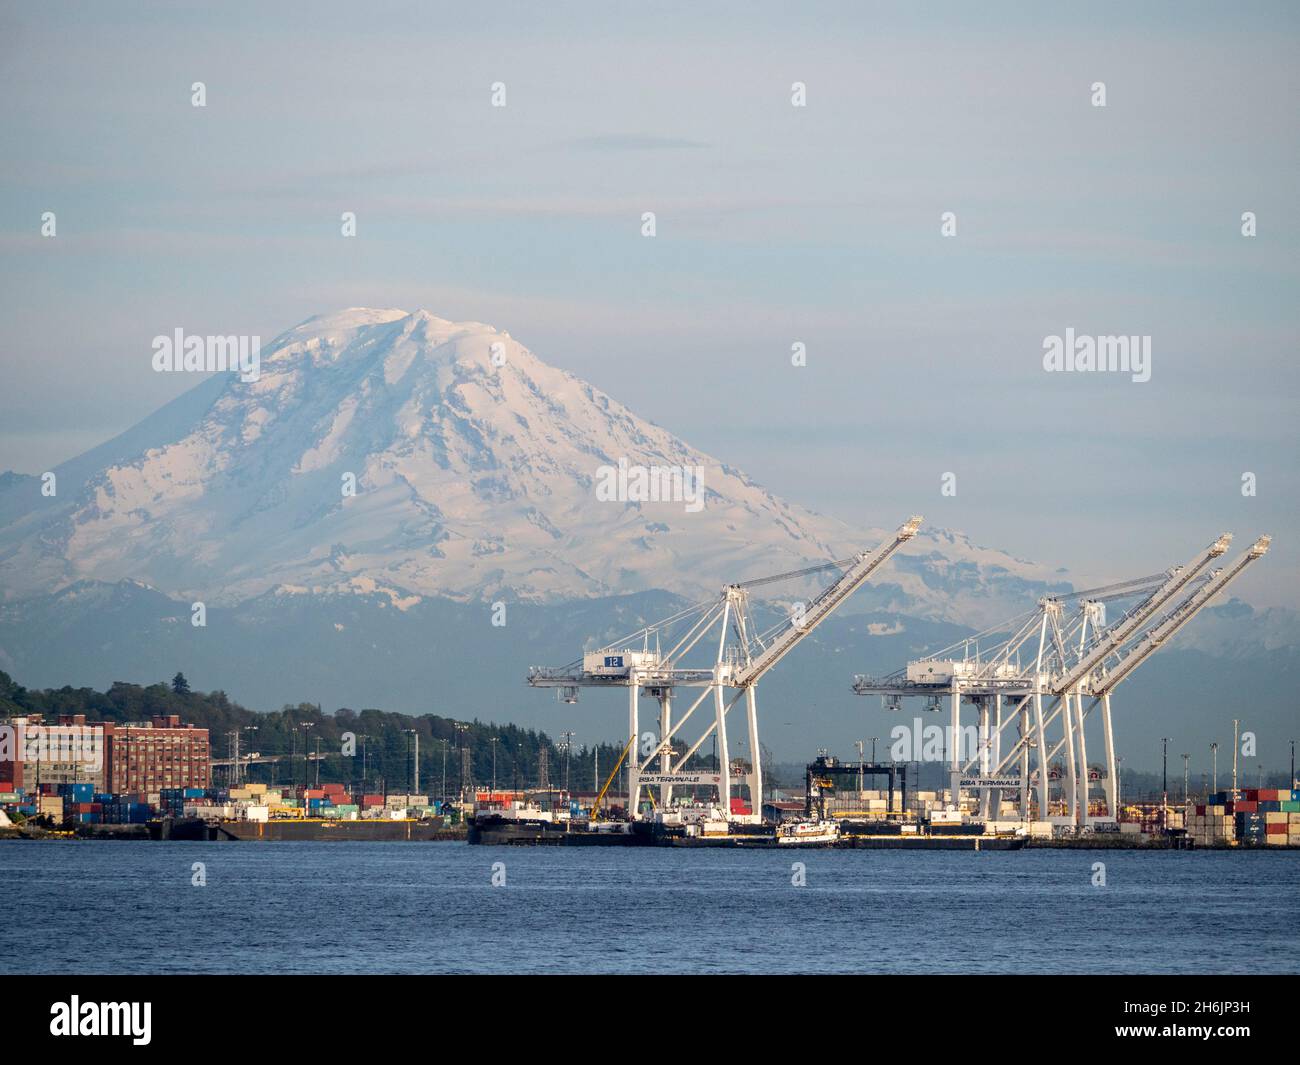 Vista de los muelles comerciales de Seattle con el Monte Rainier al fondo, Seattle, Estado de Washington, Estados Unidos de América, América del Norte Foto de stock